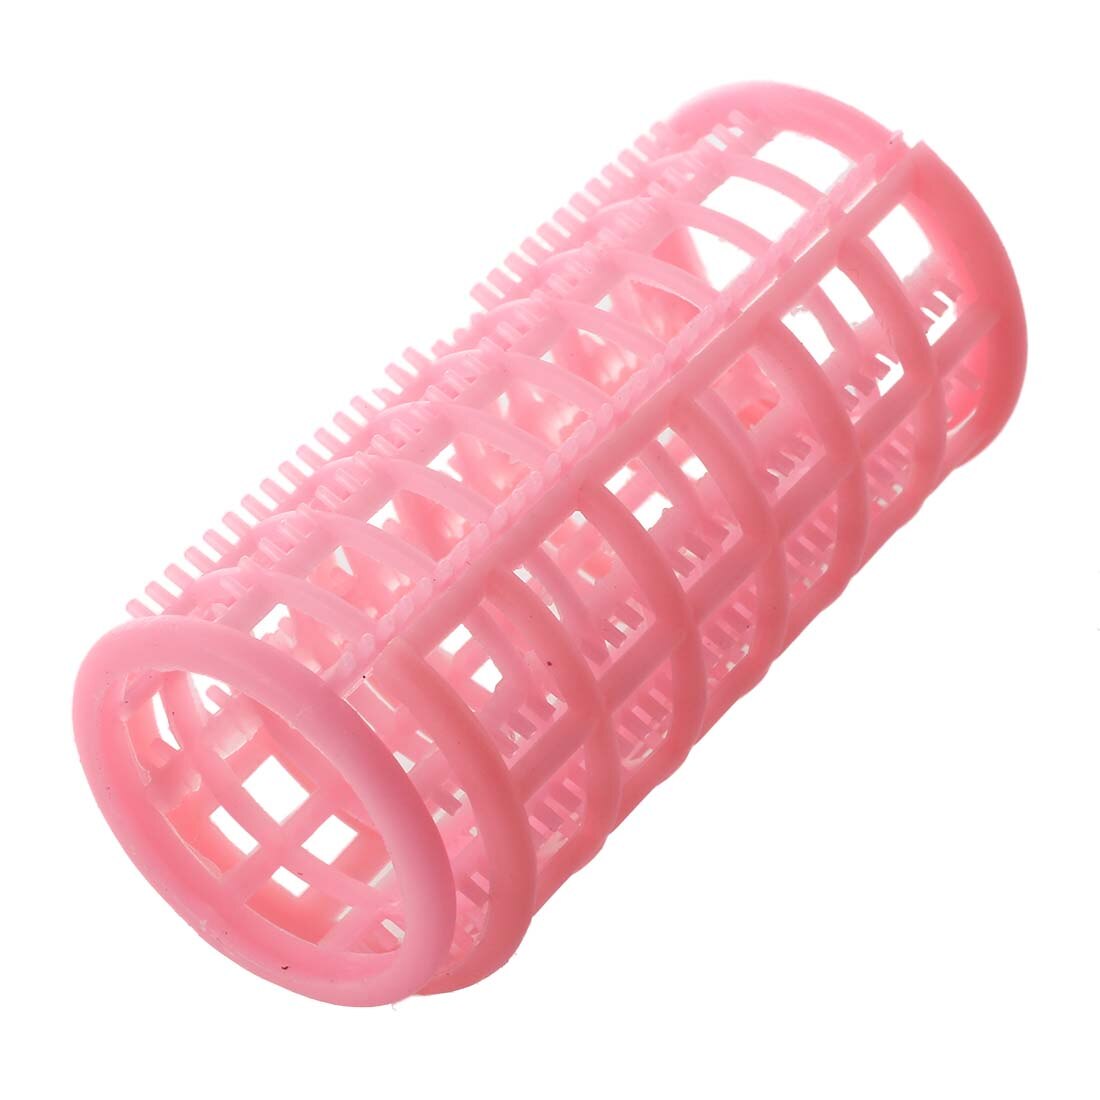 Hhff dame pink plastik magic circle hair styling roller curler 10 stk